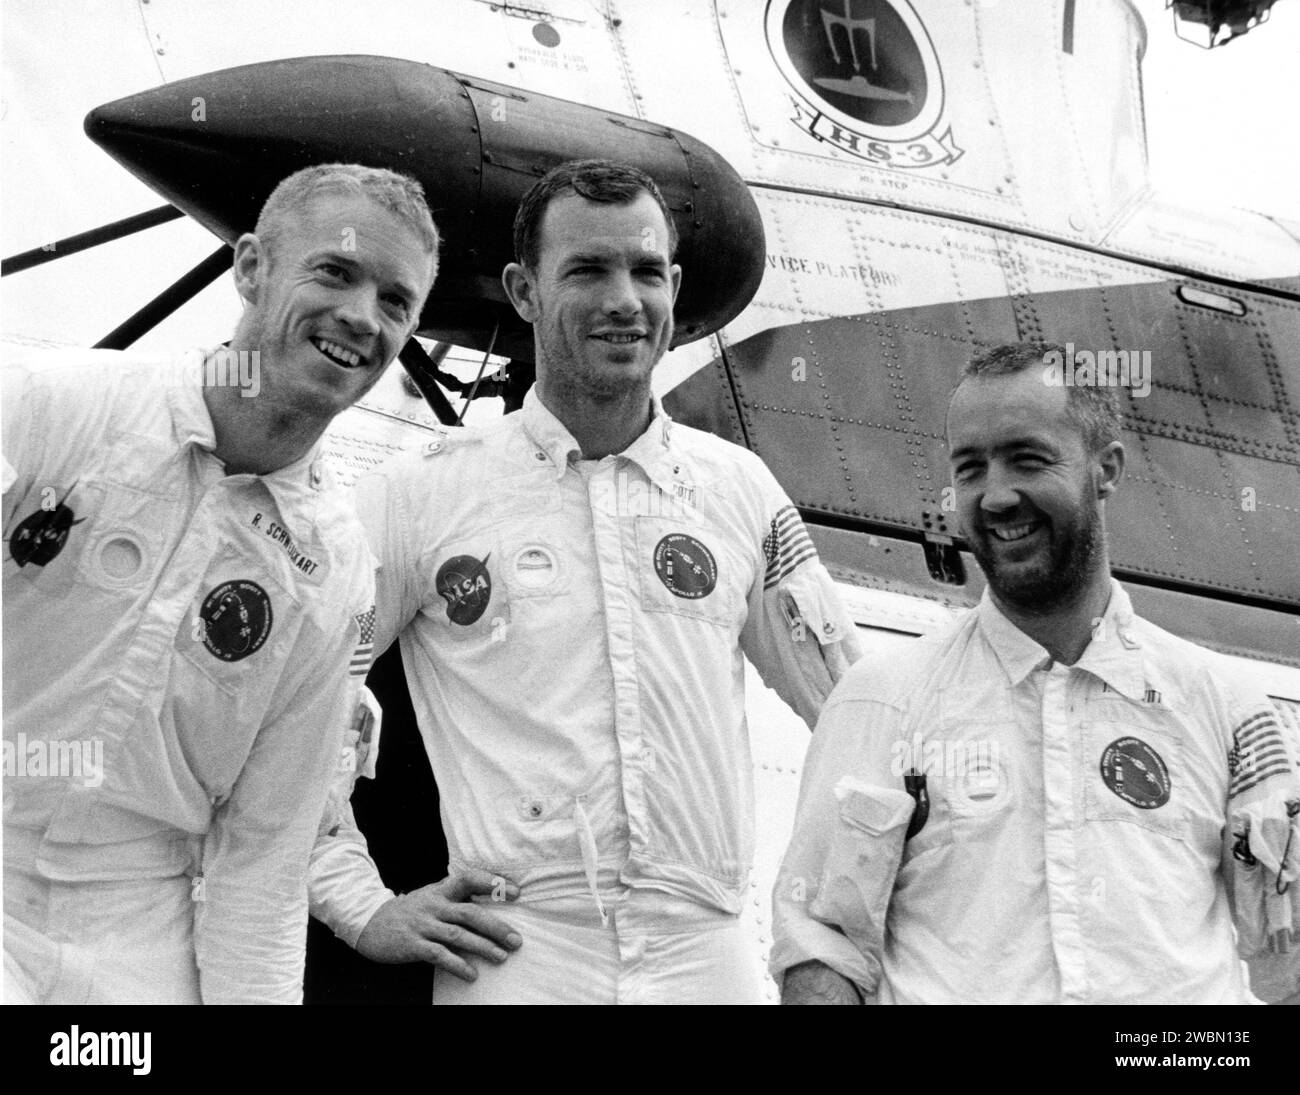 KENNEDY SPACE CENTER, FLA. -- barbuti e sorridenti, astronauti dell'Apollo 9, da sinistra a destra, Russell L. Schweickart, David R. Scott e James A. McDivitt, si fermano davanti all'elicottero di recupero, che li ha portati a breve distanza dal punto d'impatto della loro navicella fino alla USS Guadalcanal, nave di recupero primaria importanza. Oggi sono precipitati a meno di otto miglia dal Guadalcanal, 780 miglia nautiche a sud-est di Cape Kennedy. Gli astronauti sono rientrati all'inizio della loro 152a orbita terrestre dopo un volo da manuale che ha verificato un modulo spaziale lunare. Era simile a quella che è la terra Foto Stock